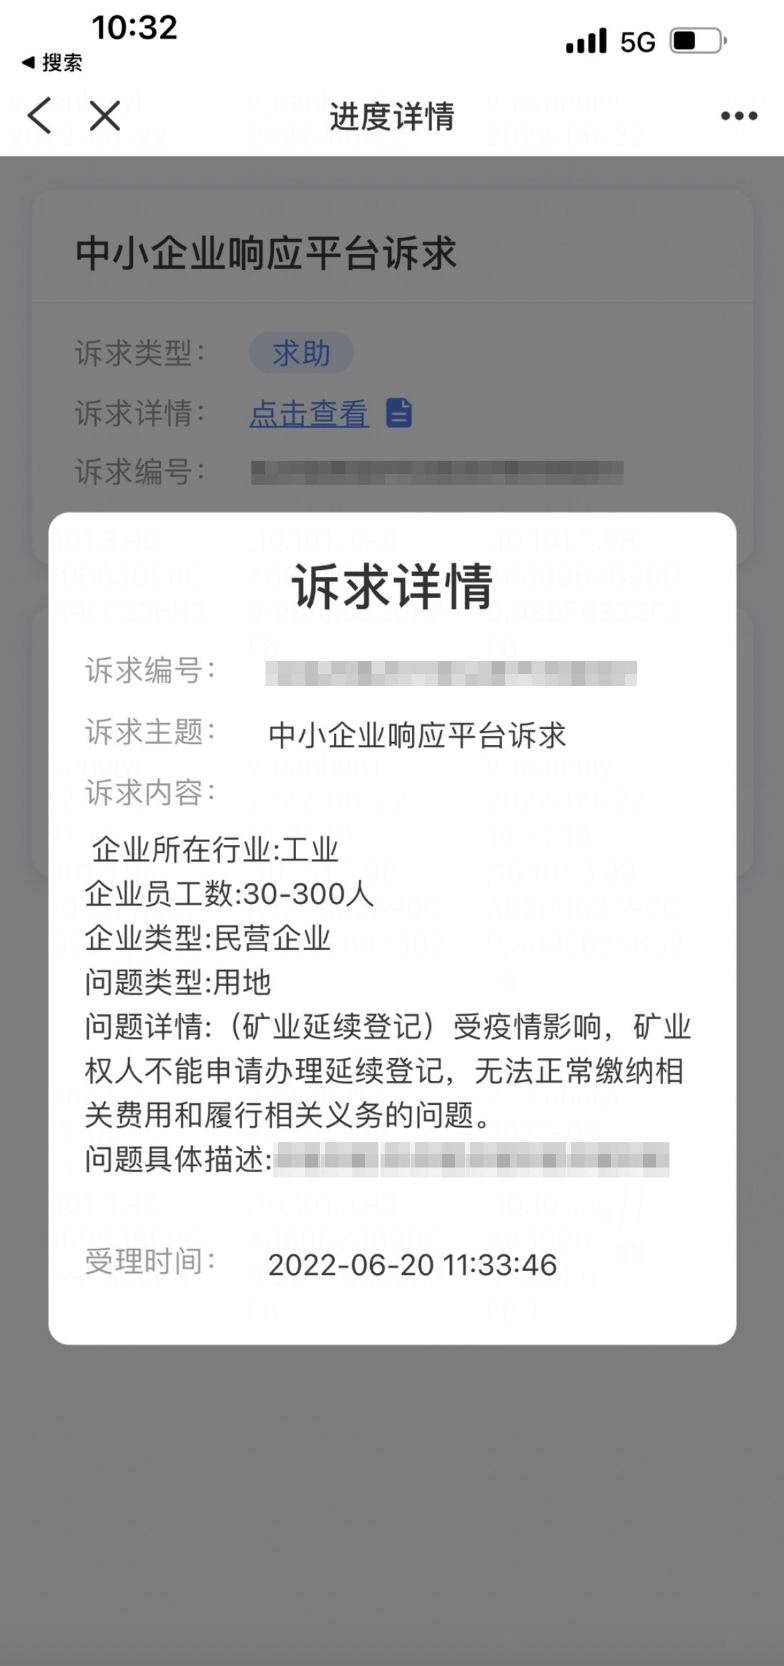 粤商通App诉求响应平台.png